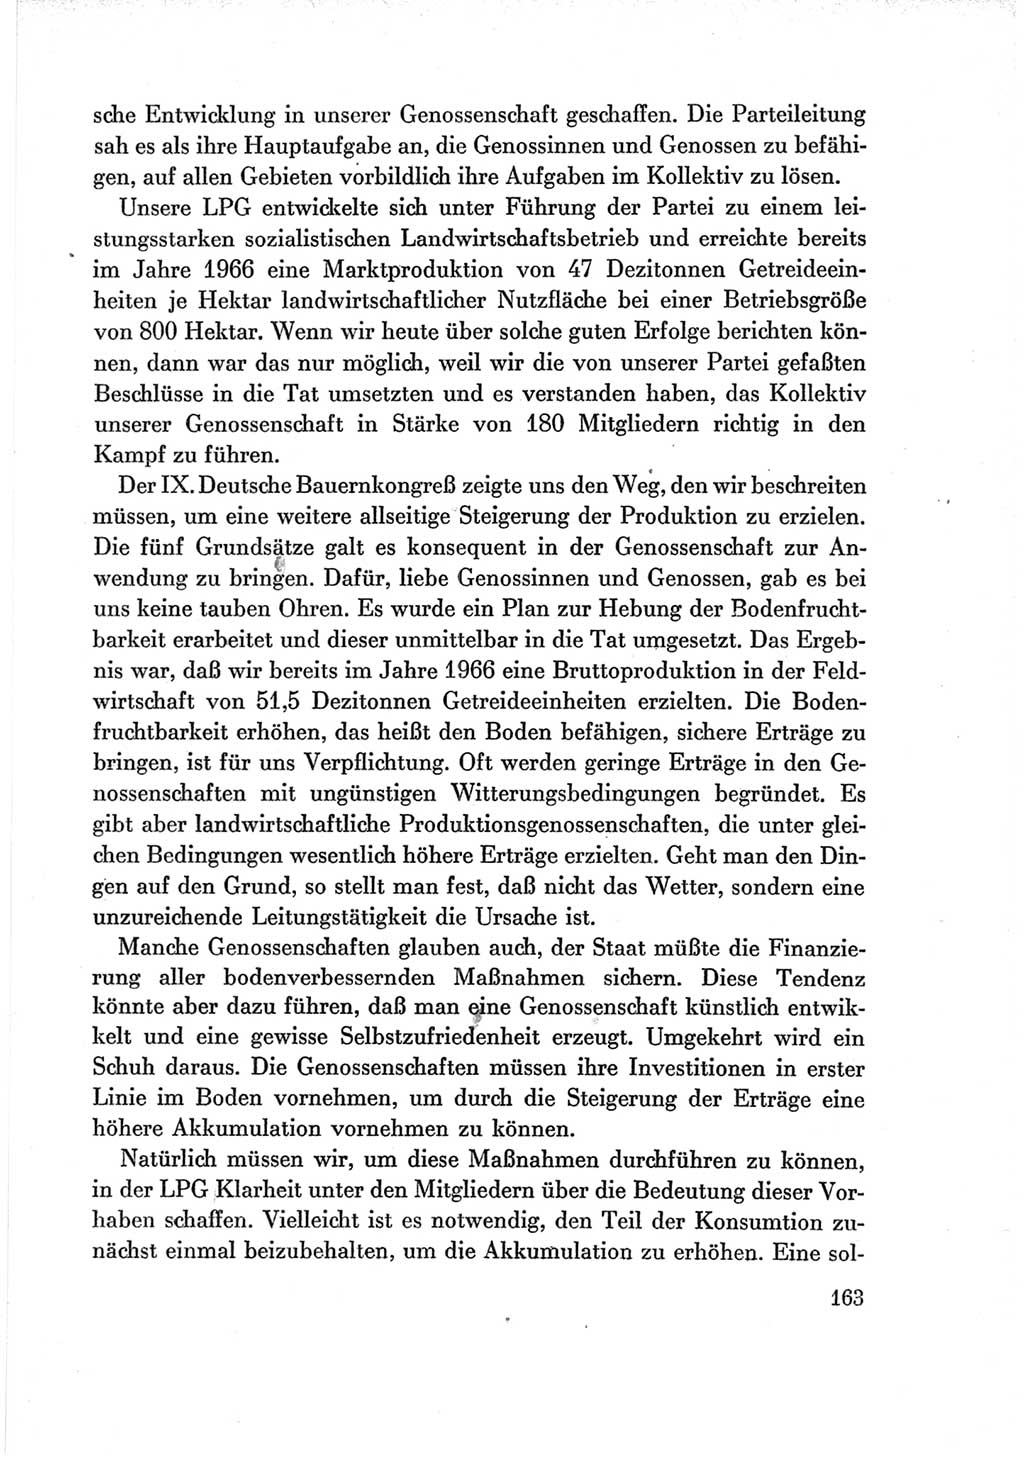 Protokoll der Verhandlungen des Ⅶ. Parteitages der Sozialistischen Einheitspartei Deutschlands (SED) [Deutsche Demokratische Republik (DDR)] 1967, Band Ⅲ, Seite 163 (Prot. Verh. Ⅶ. PT SED DDR 1967, Bd. Ⅲ, S. 163)